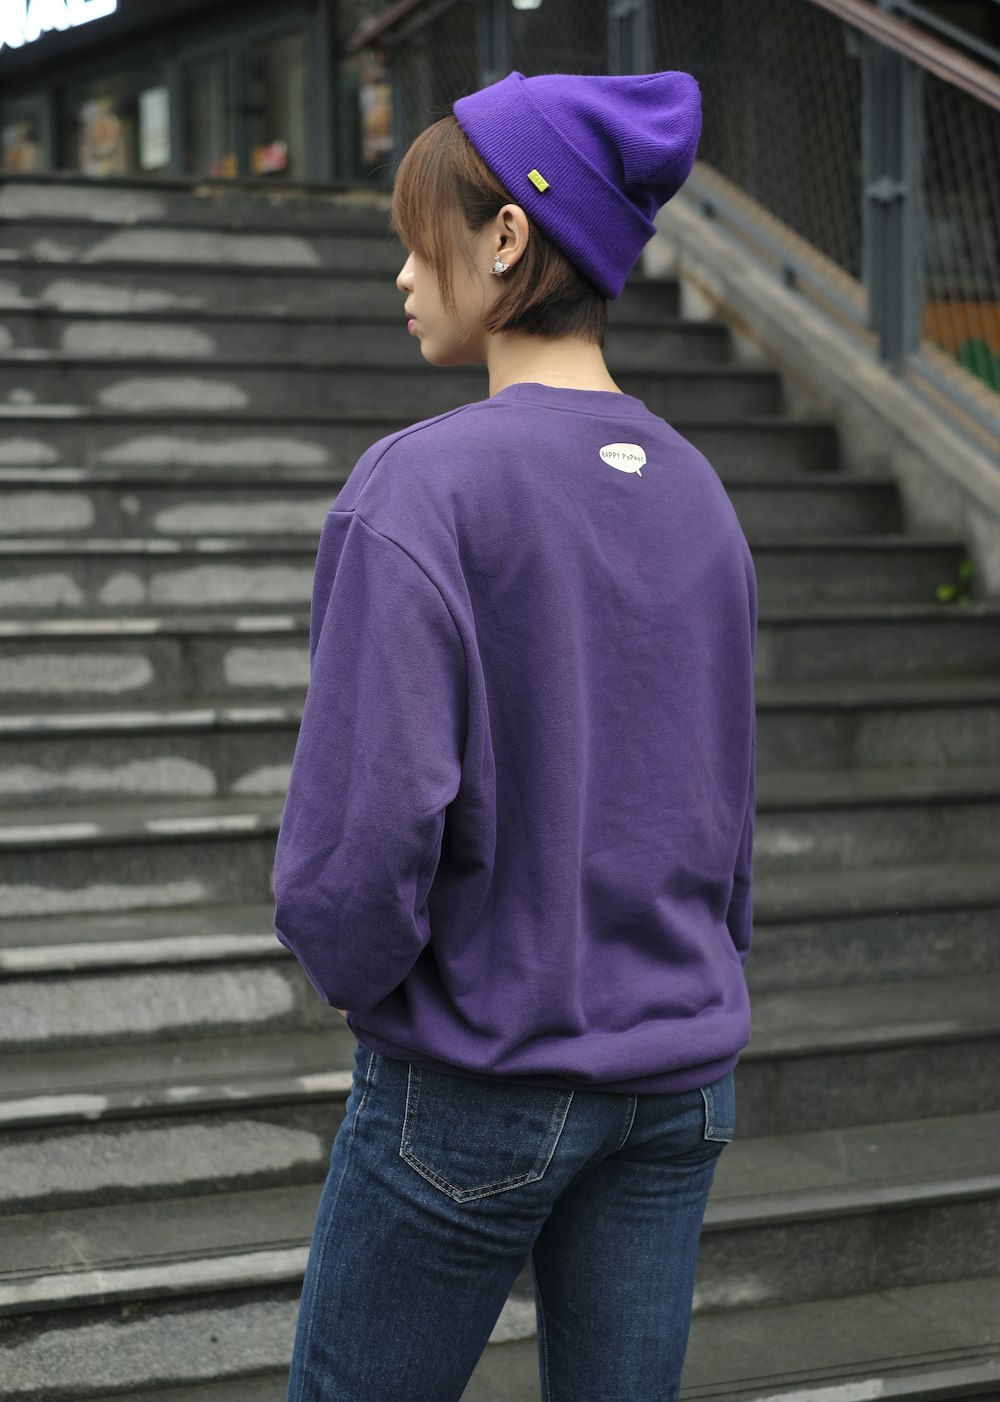 a woman wearing a purple sweatshirt and a purple hat